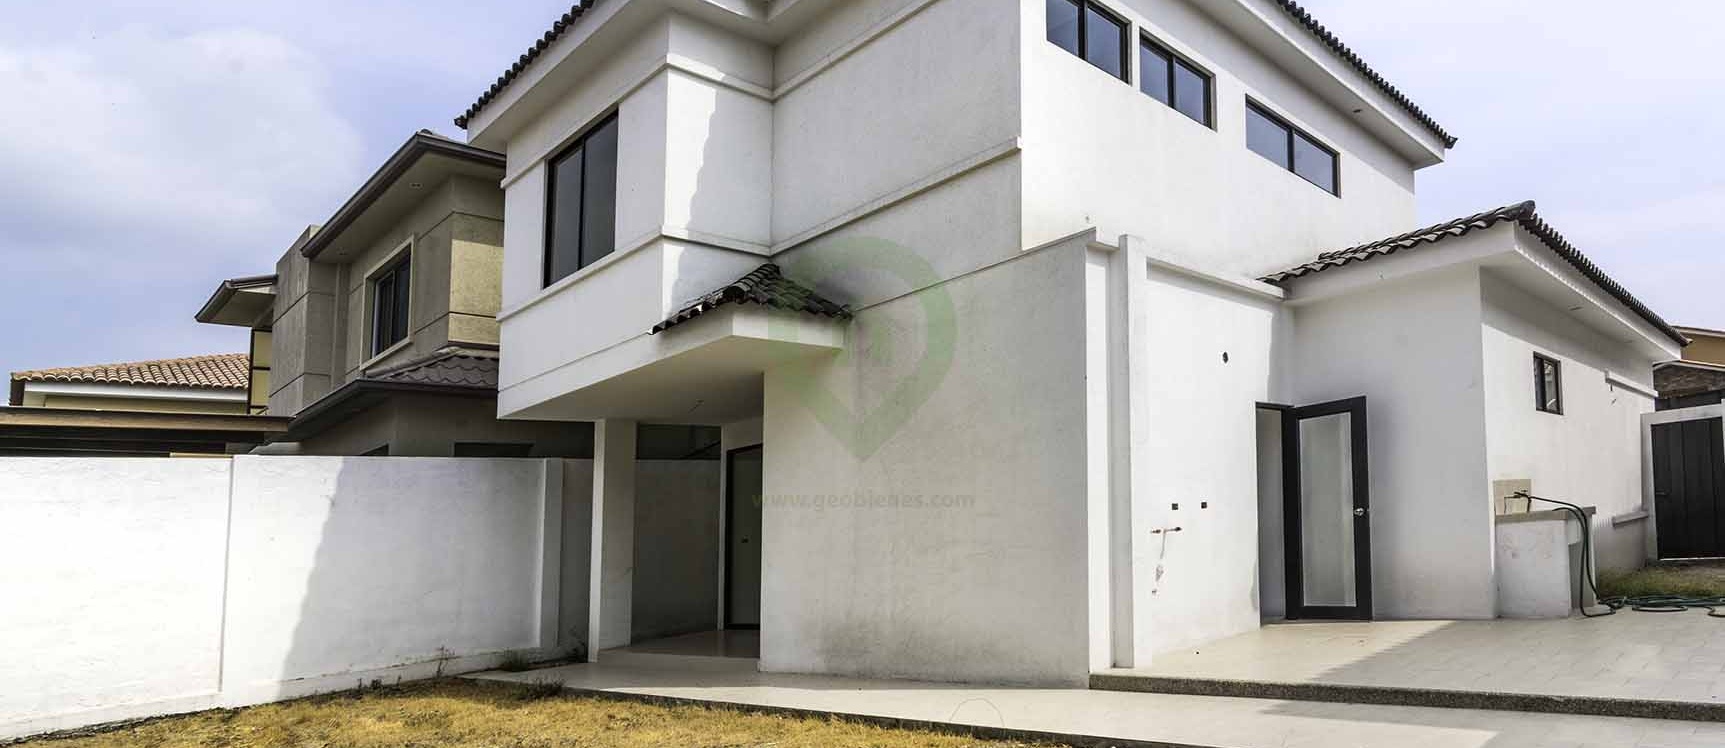 GeoBienes - Casa en Venta en Ciudad Celeste Vía a Samborondón - Plusvalia Guayaquil Casas de venta y alquiler Inmobiliaria Ecuador